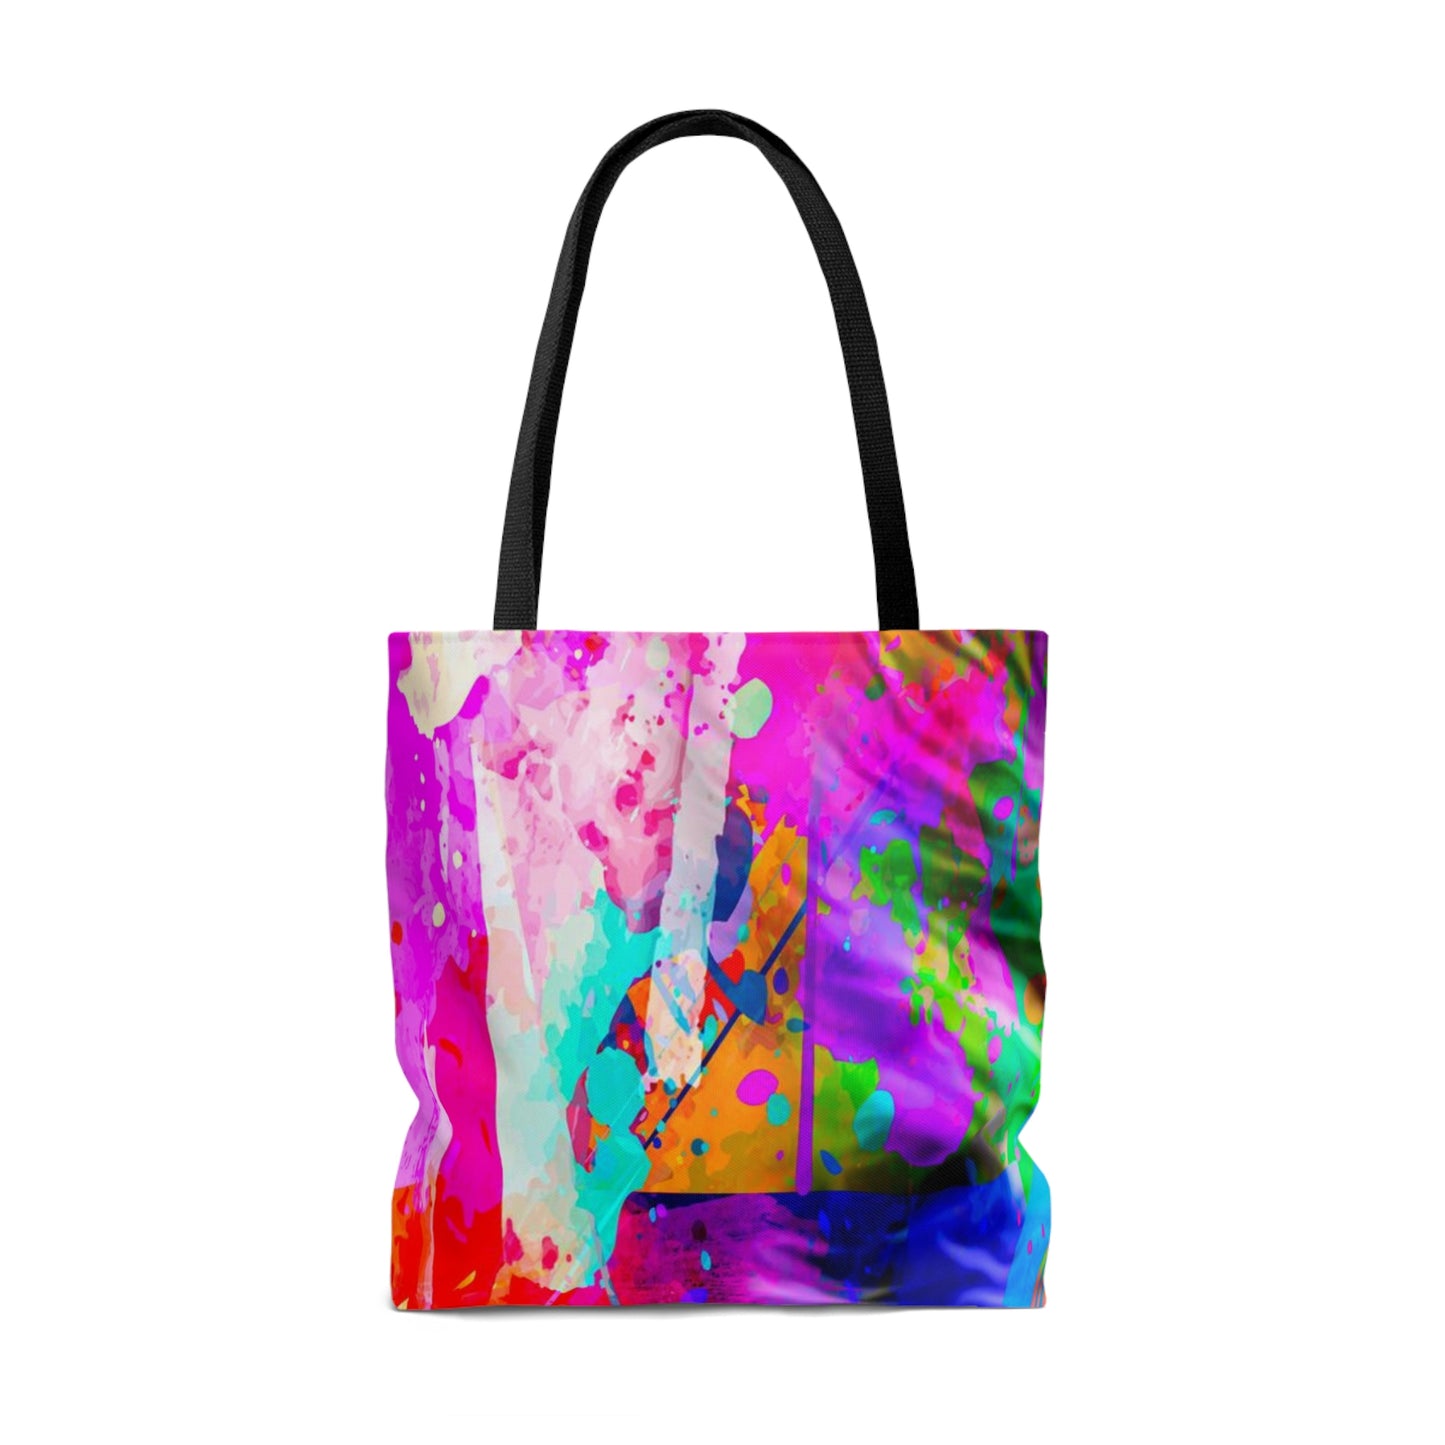 AOP Tote Bag "Lion color art"